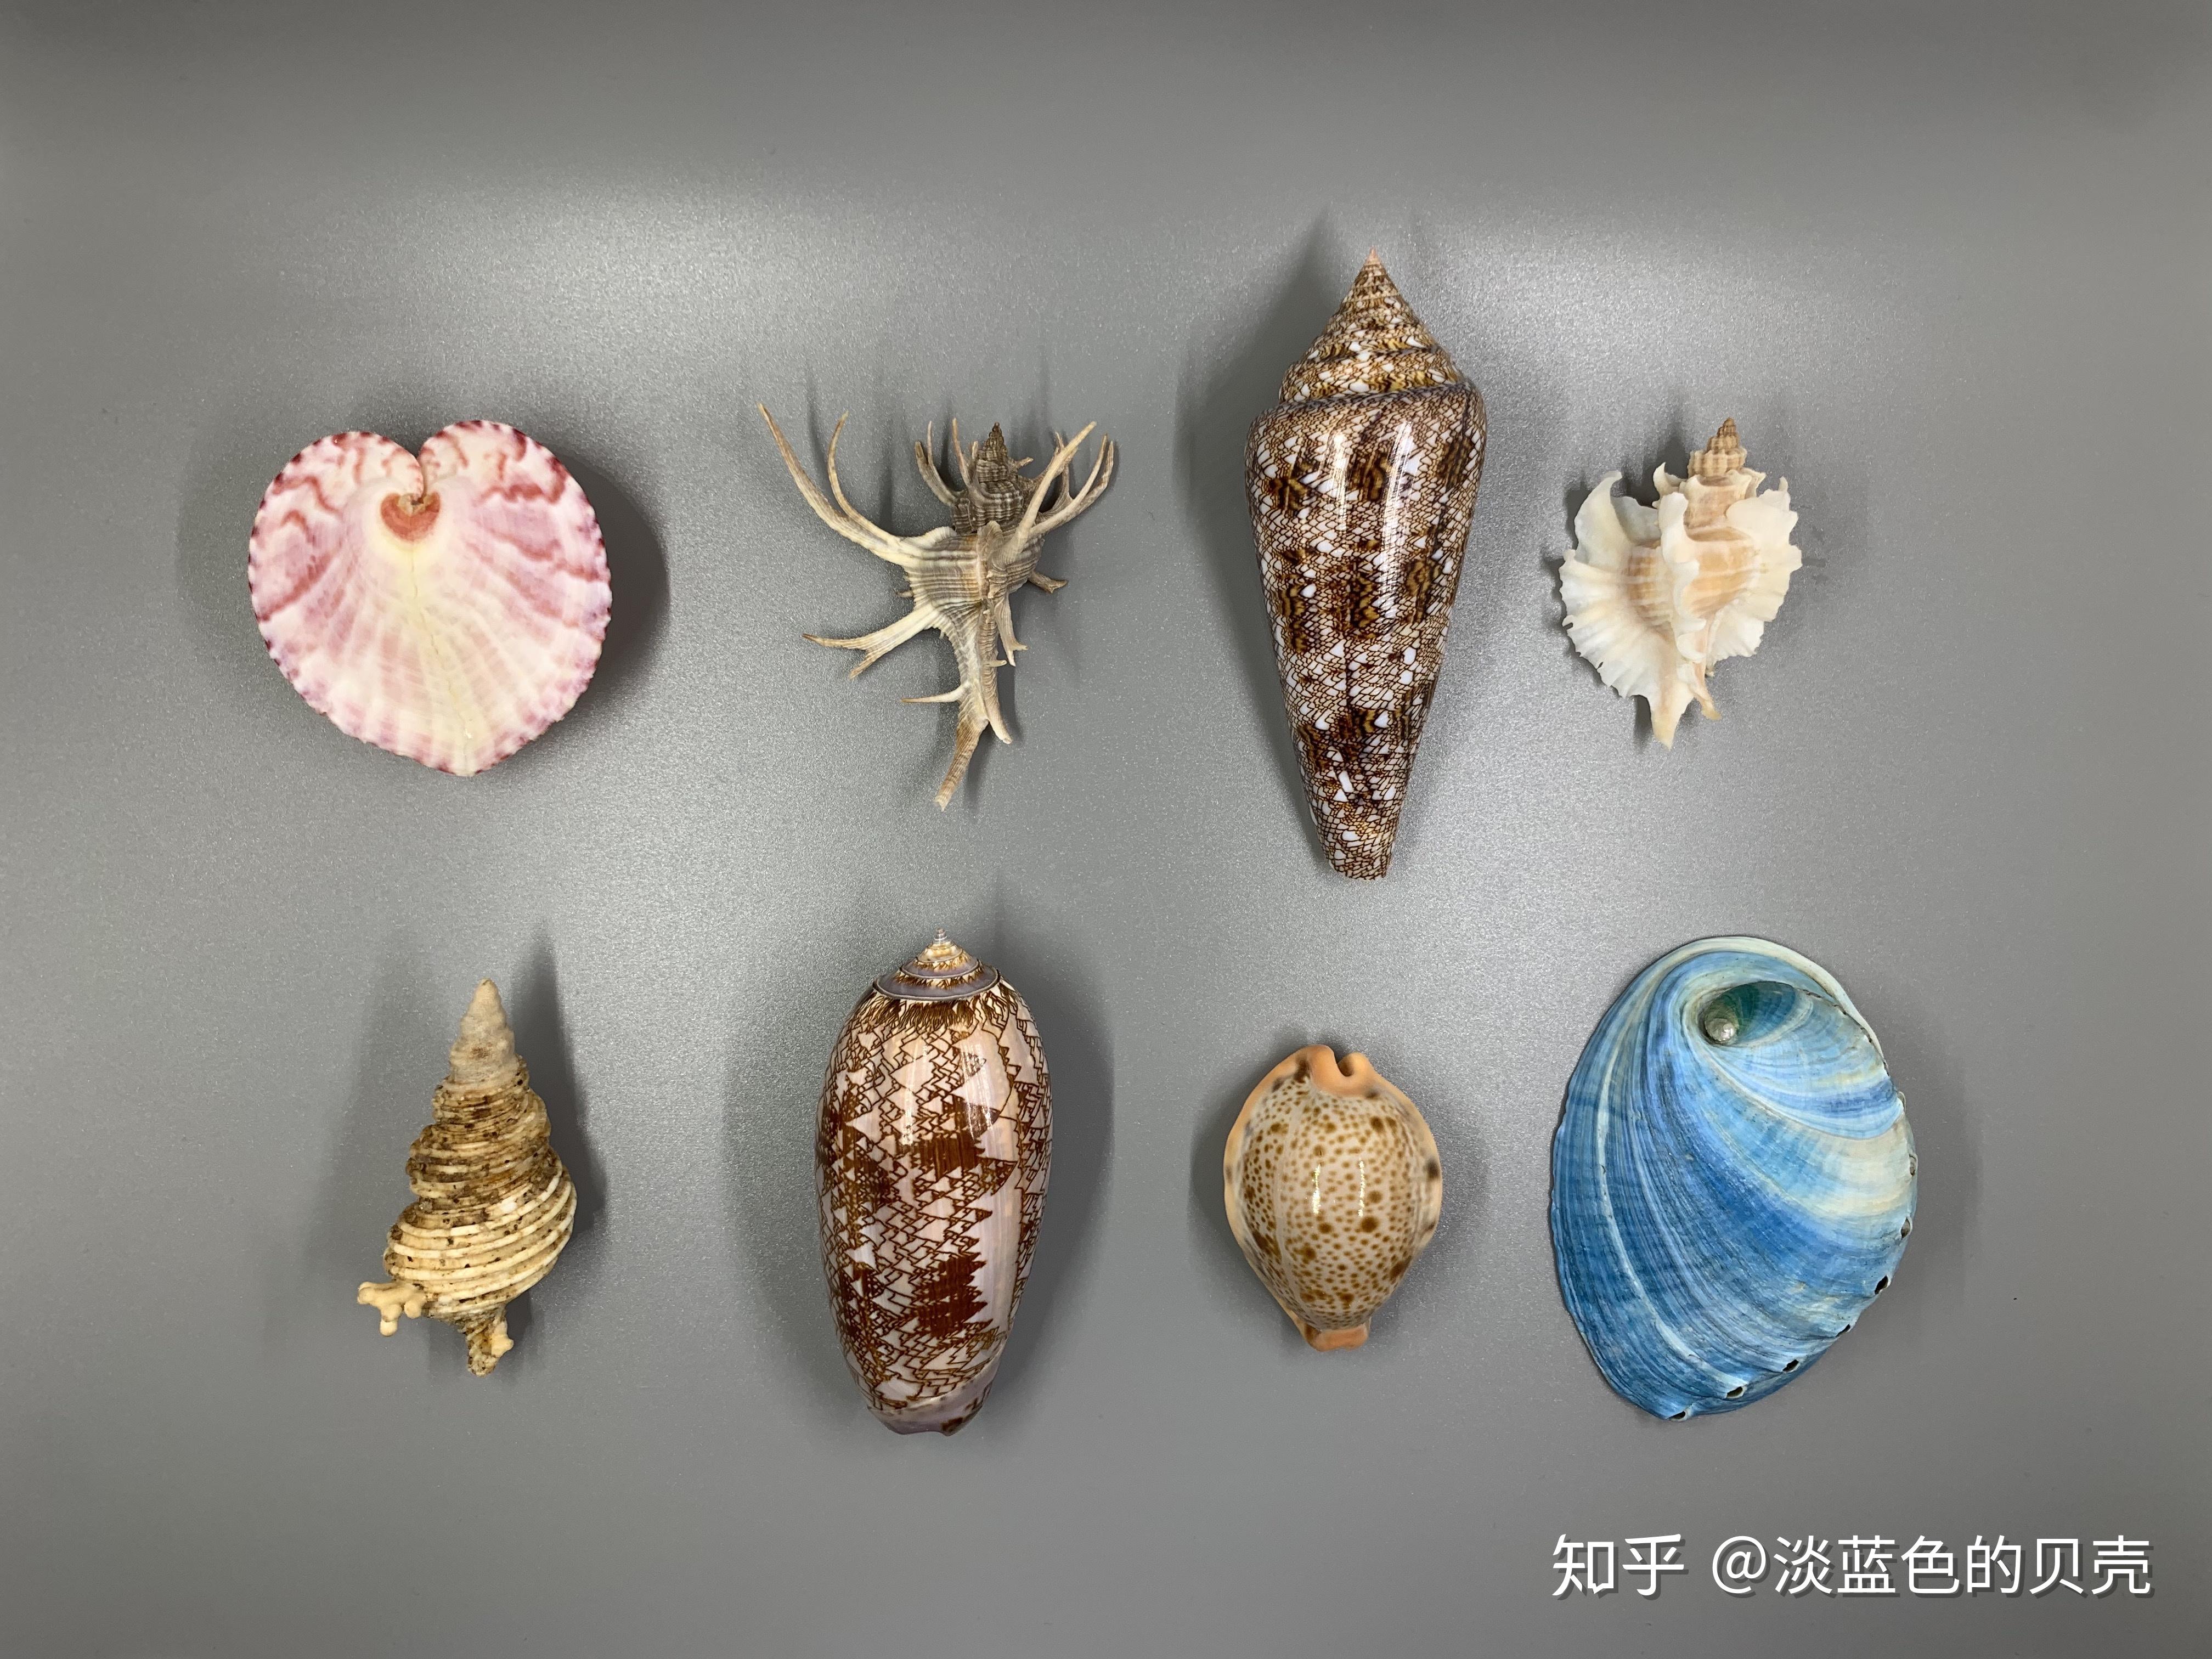 贝雕 青岛特色 海艺贝雕 商务礼品 会议旅游纪念品 贝壳雕琢-阿里巴巴